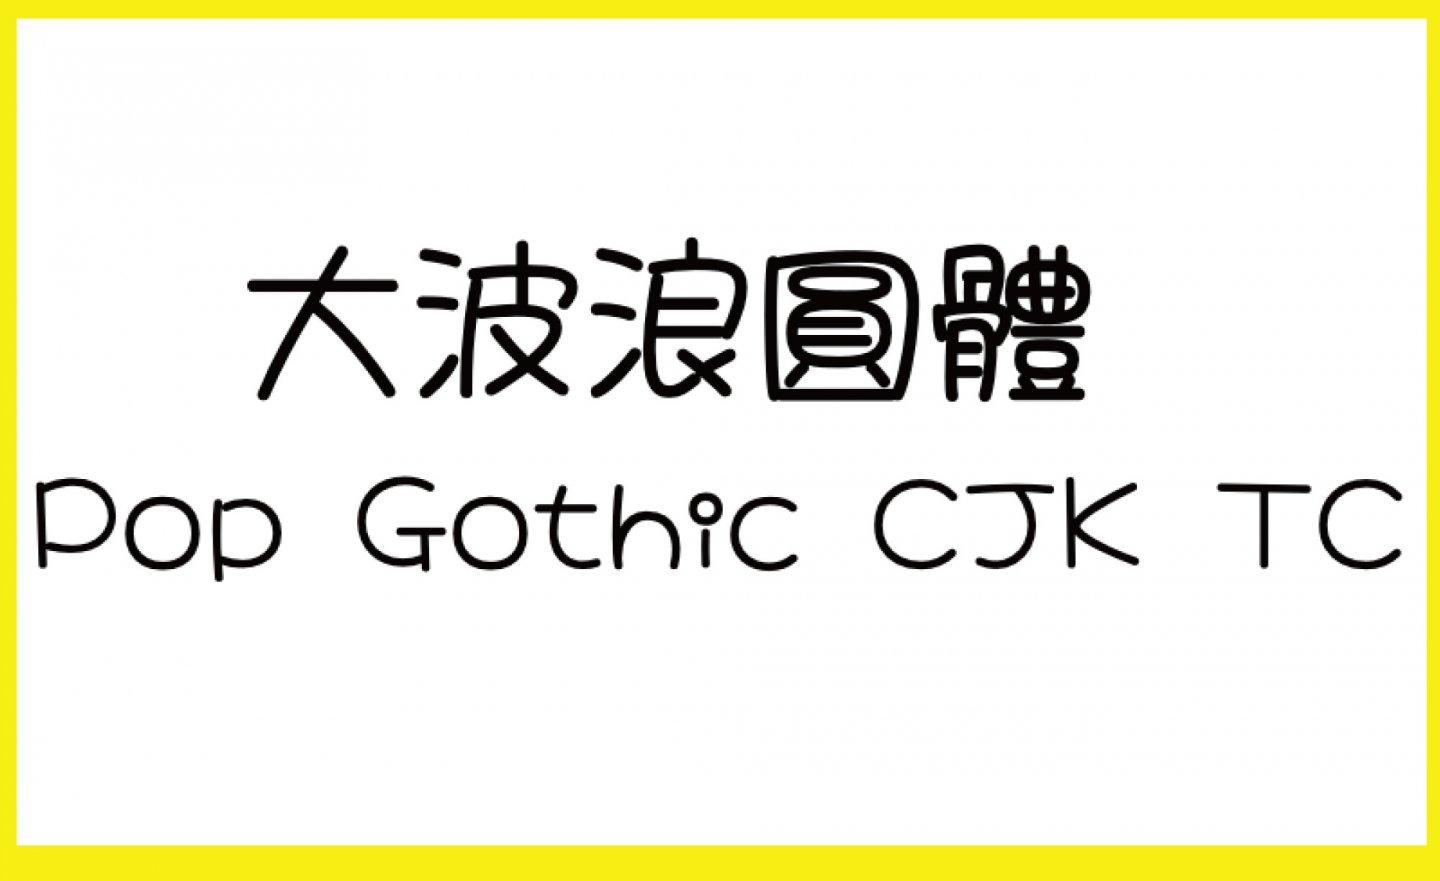 【免費】(Wins/Mac) 超可愛的「Pop Gothic 大波浪圓體 」，支援繁體中文、5種字重、可供個人及商用